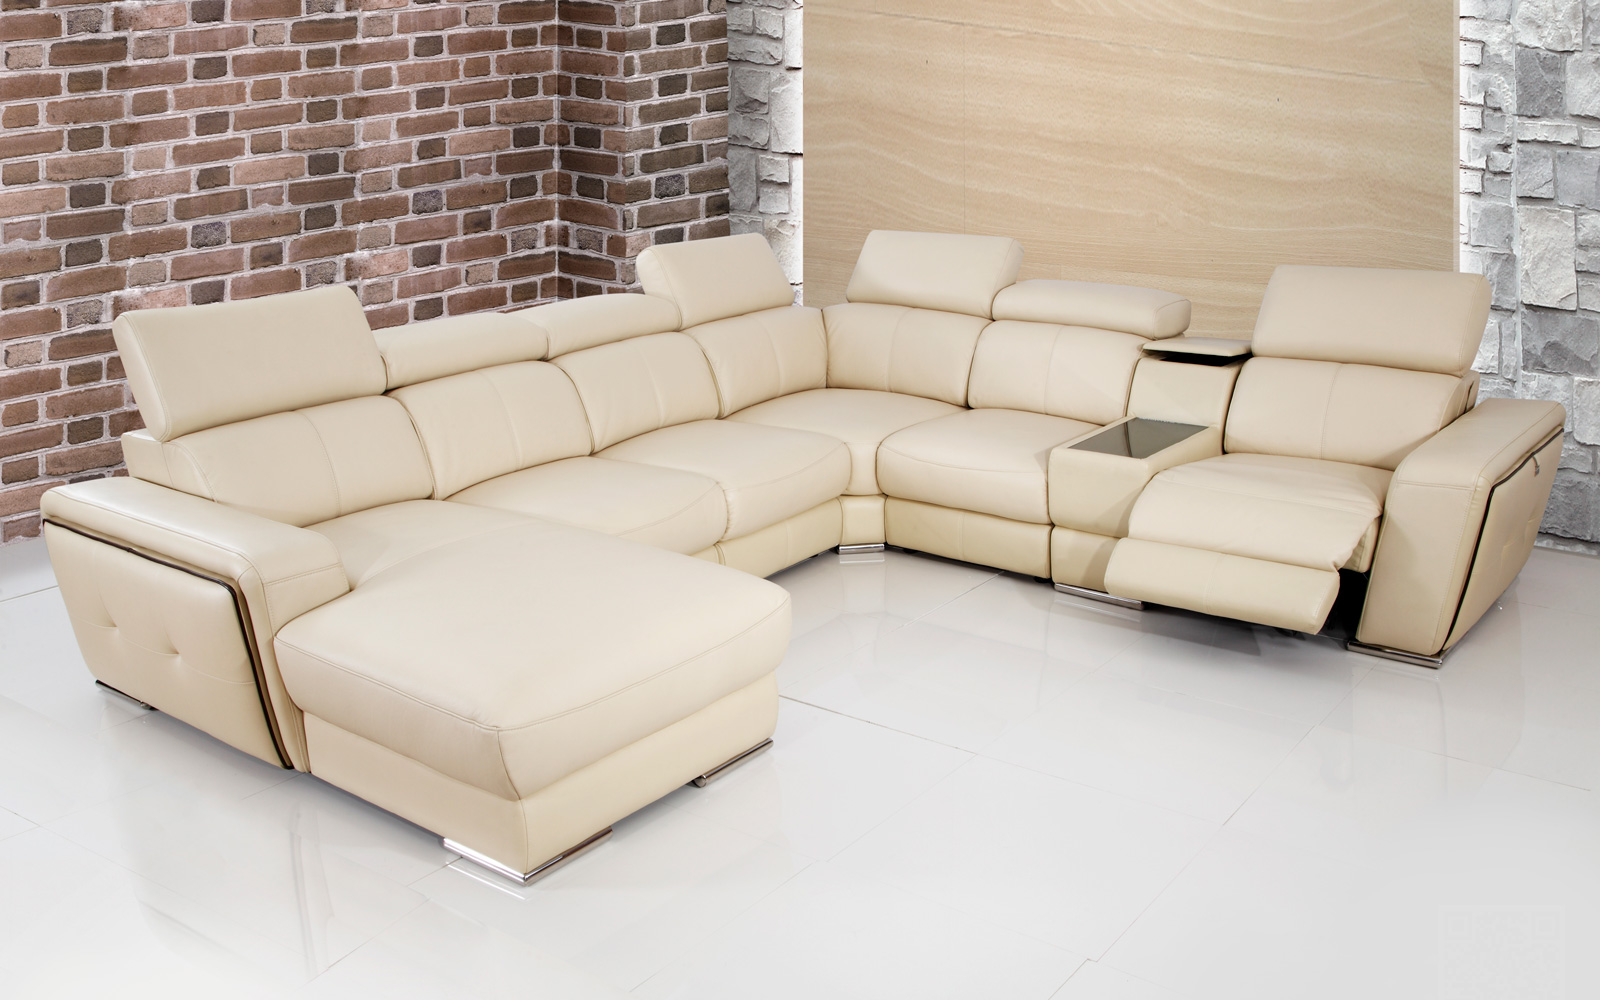 Những mẫu sofa Malaysia có thiết kế đẹp vạn người mê - Ảnh 3